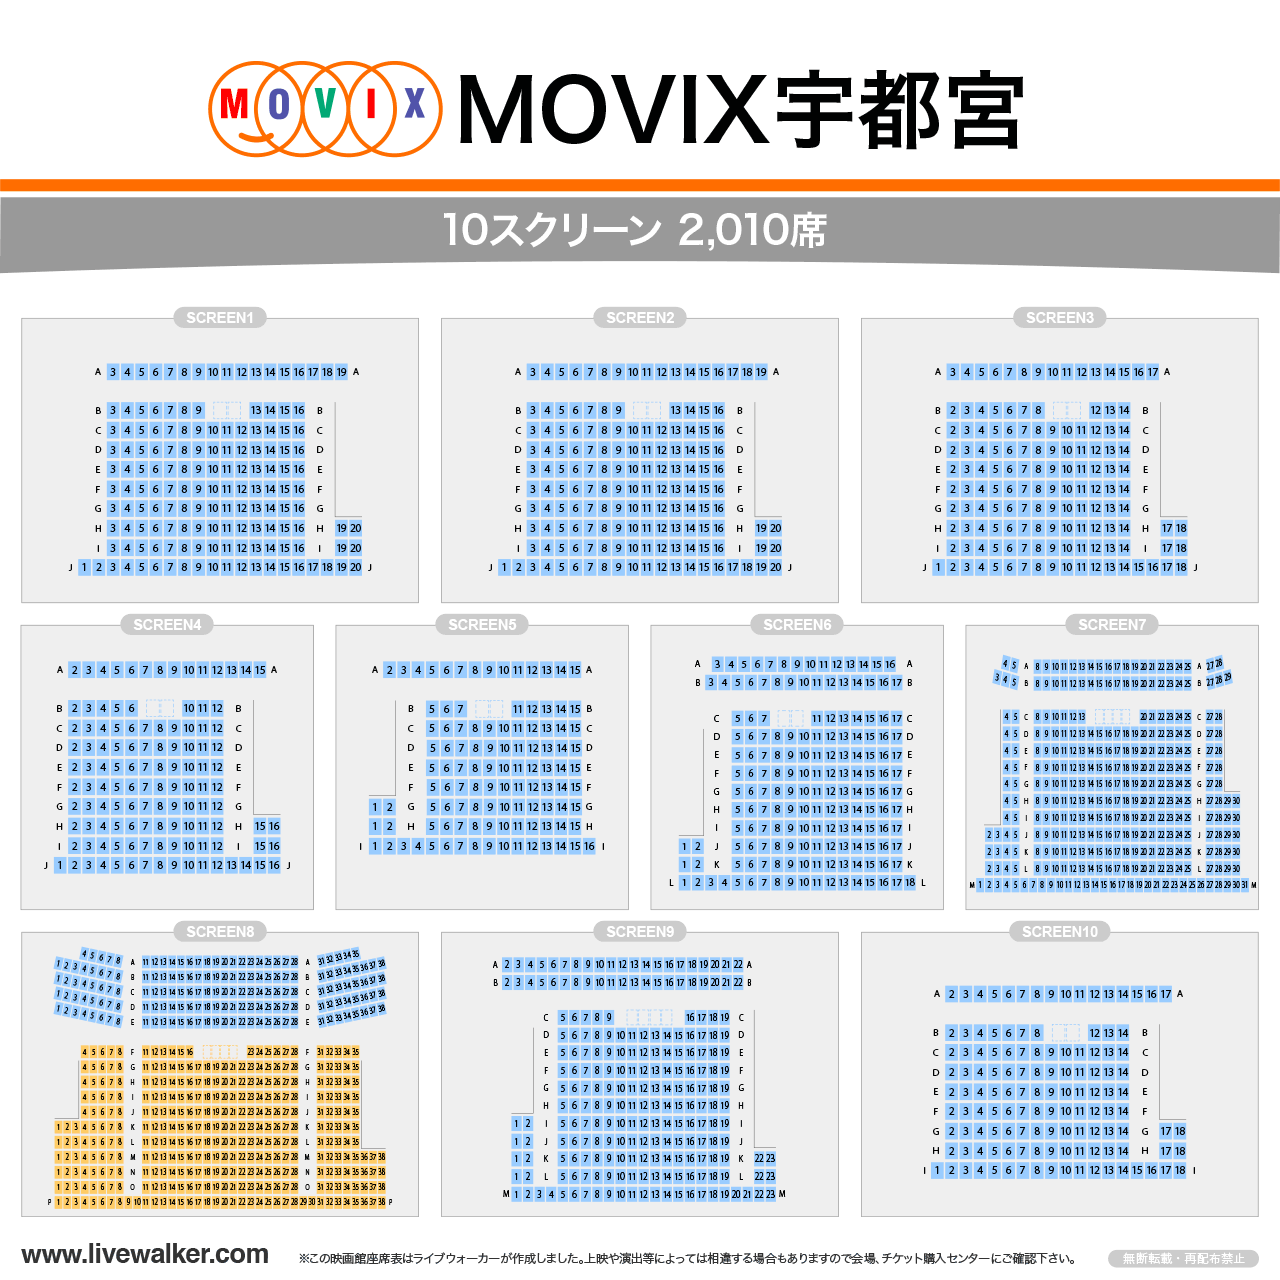 MOVIX宇都宮シアターの座席表